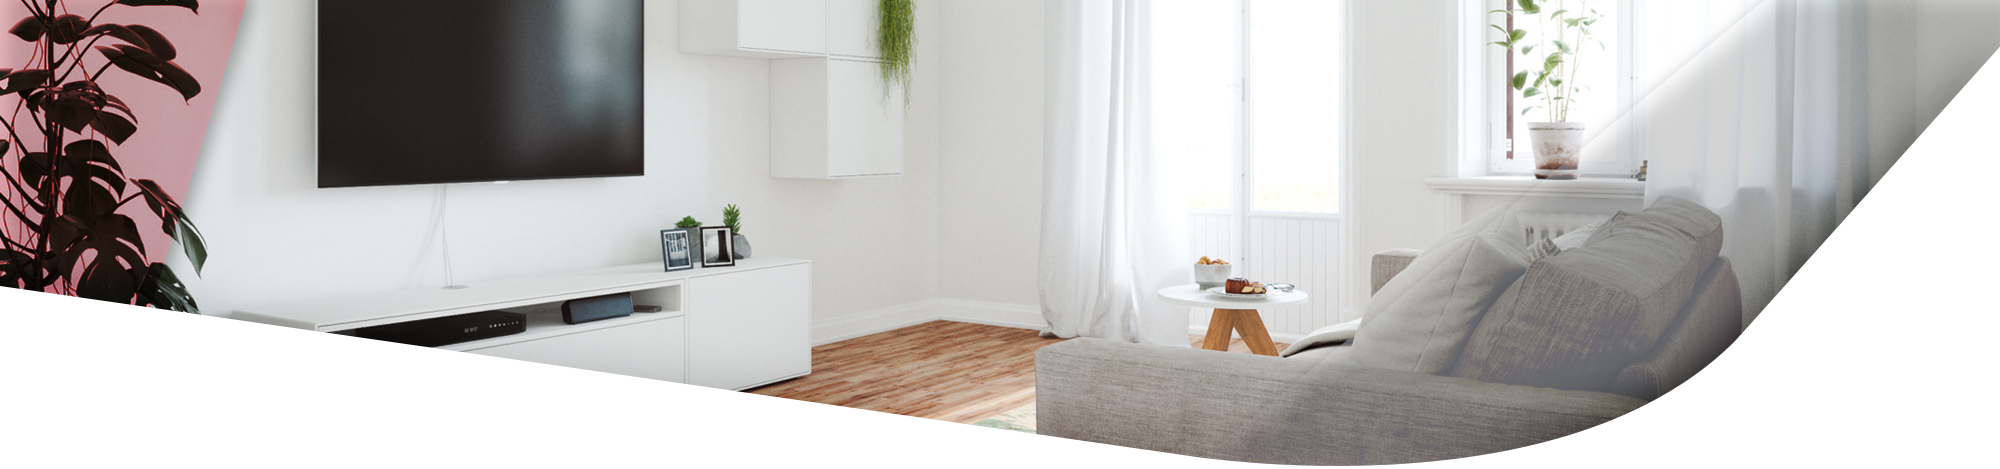 weißes Lowboard und weiße Hängeelemente im Wohnzimmer